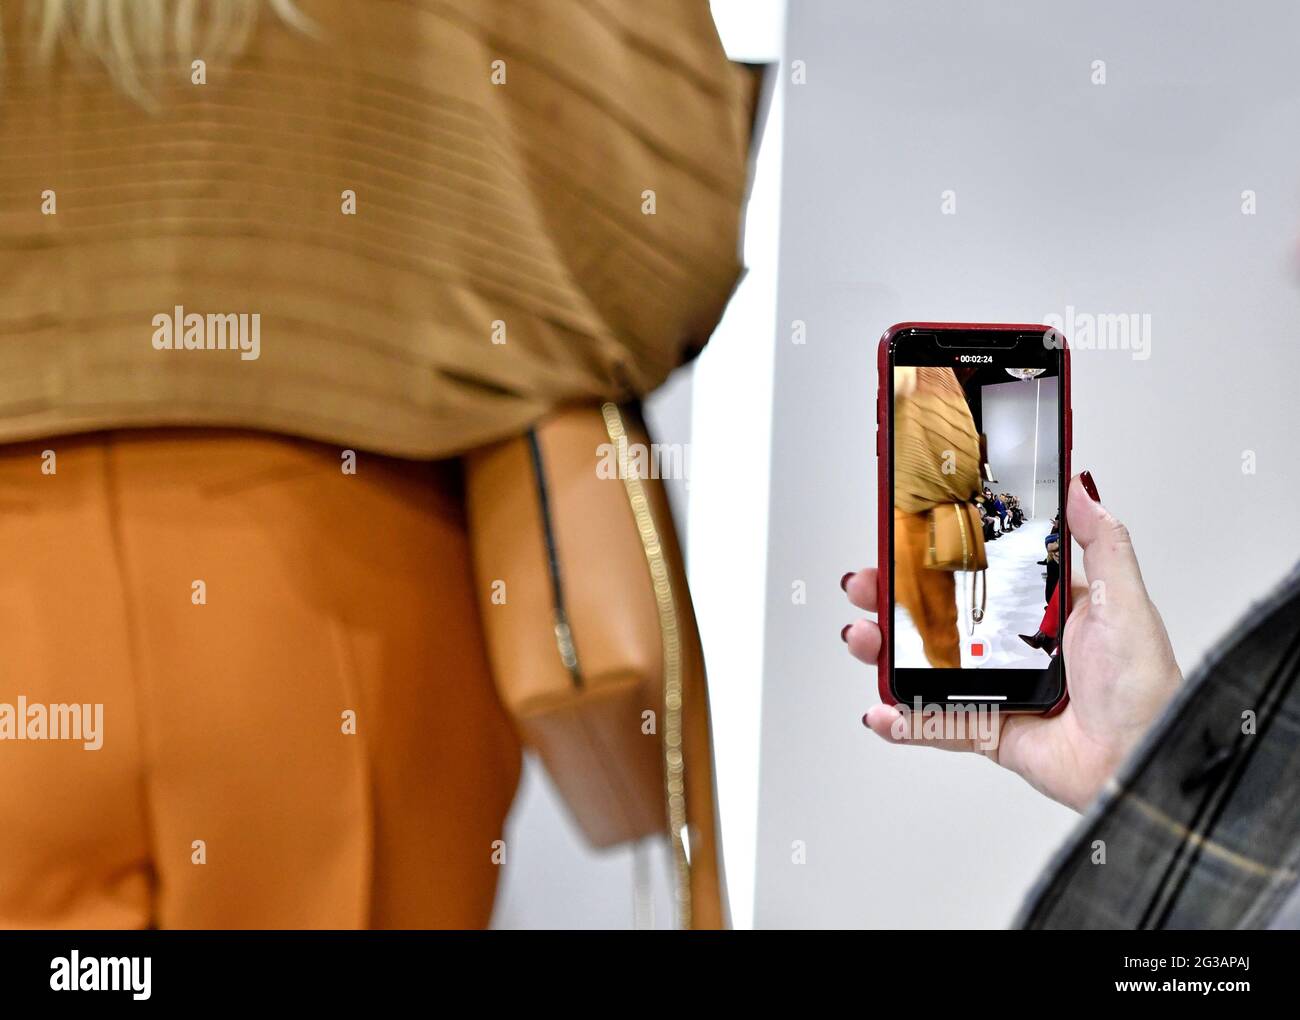 Passerella dei modelli per la ripresa di smartphone, durante la sfilata di moda autunno/inverno di Giada, all'interno della biblioteca Braidense della Pinacoteca di Brera, a Milano. Foto Stock